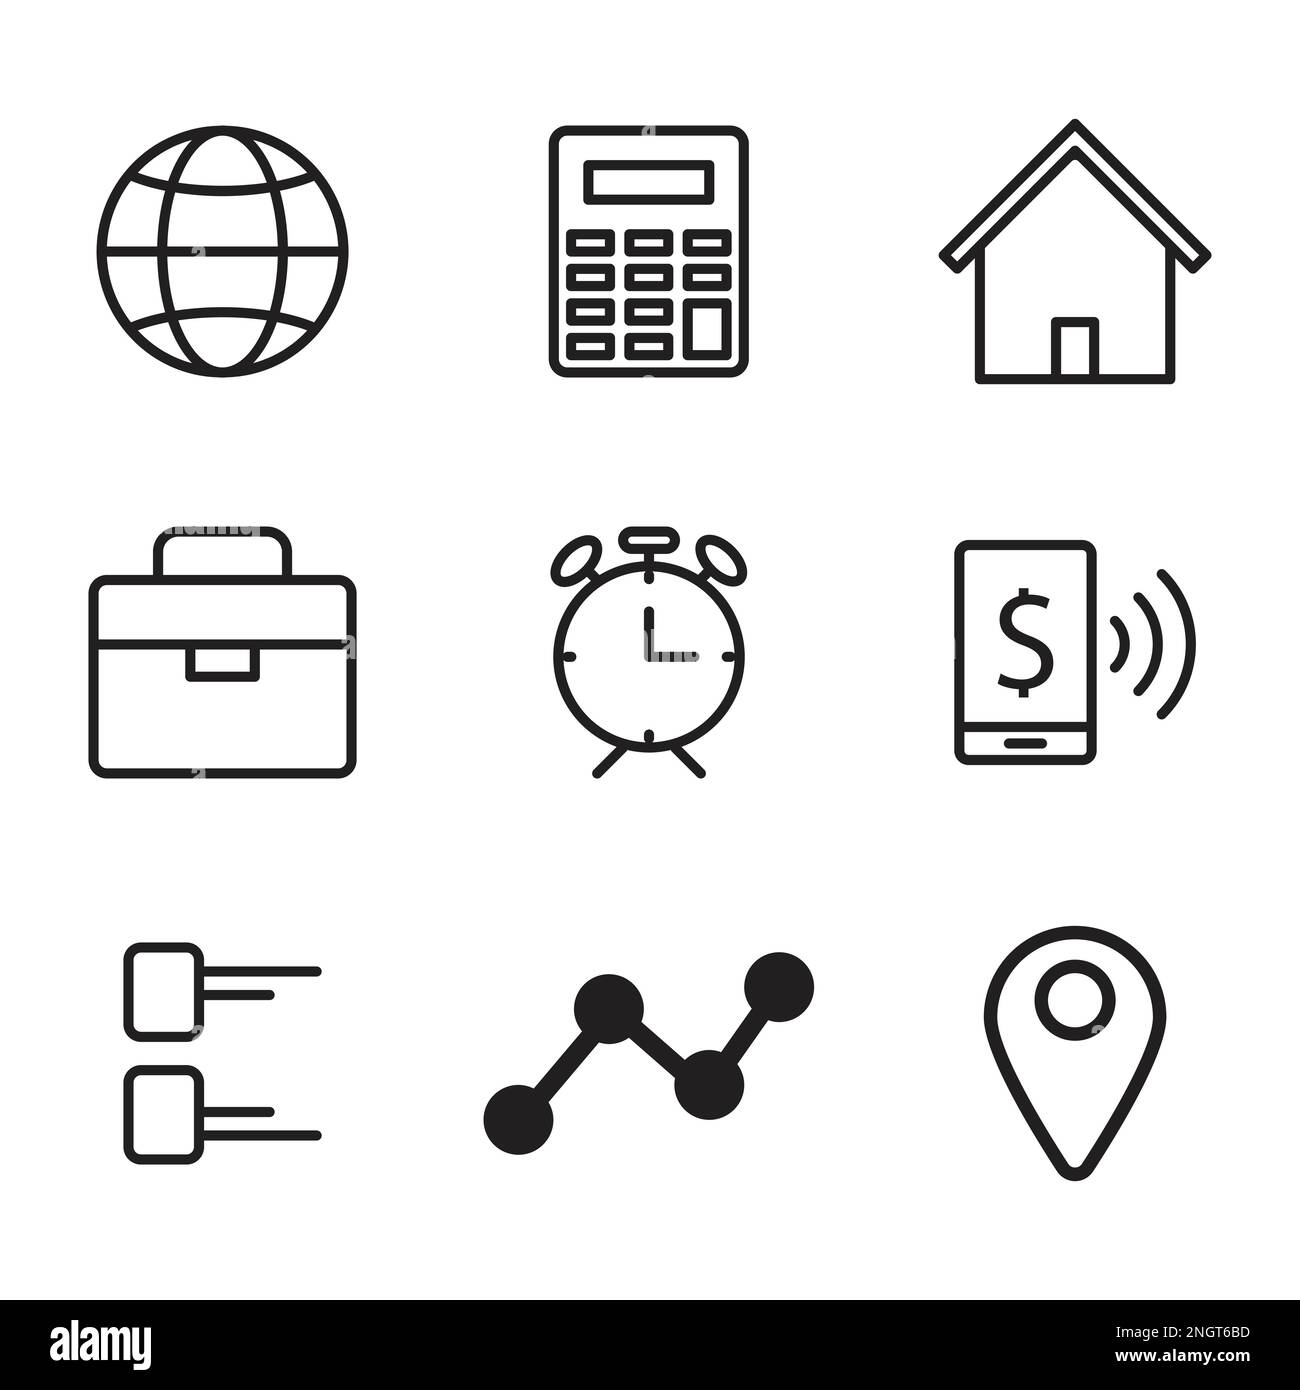 Symbolsatz für Unternehmen für digitale Marketing-Apps und Web, Uhr, Timer, Startseite, Standort, Symbole für Business-Taschen Stock Vektor